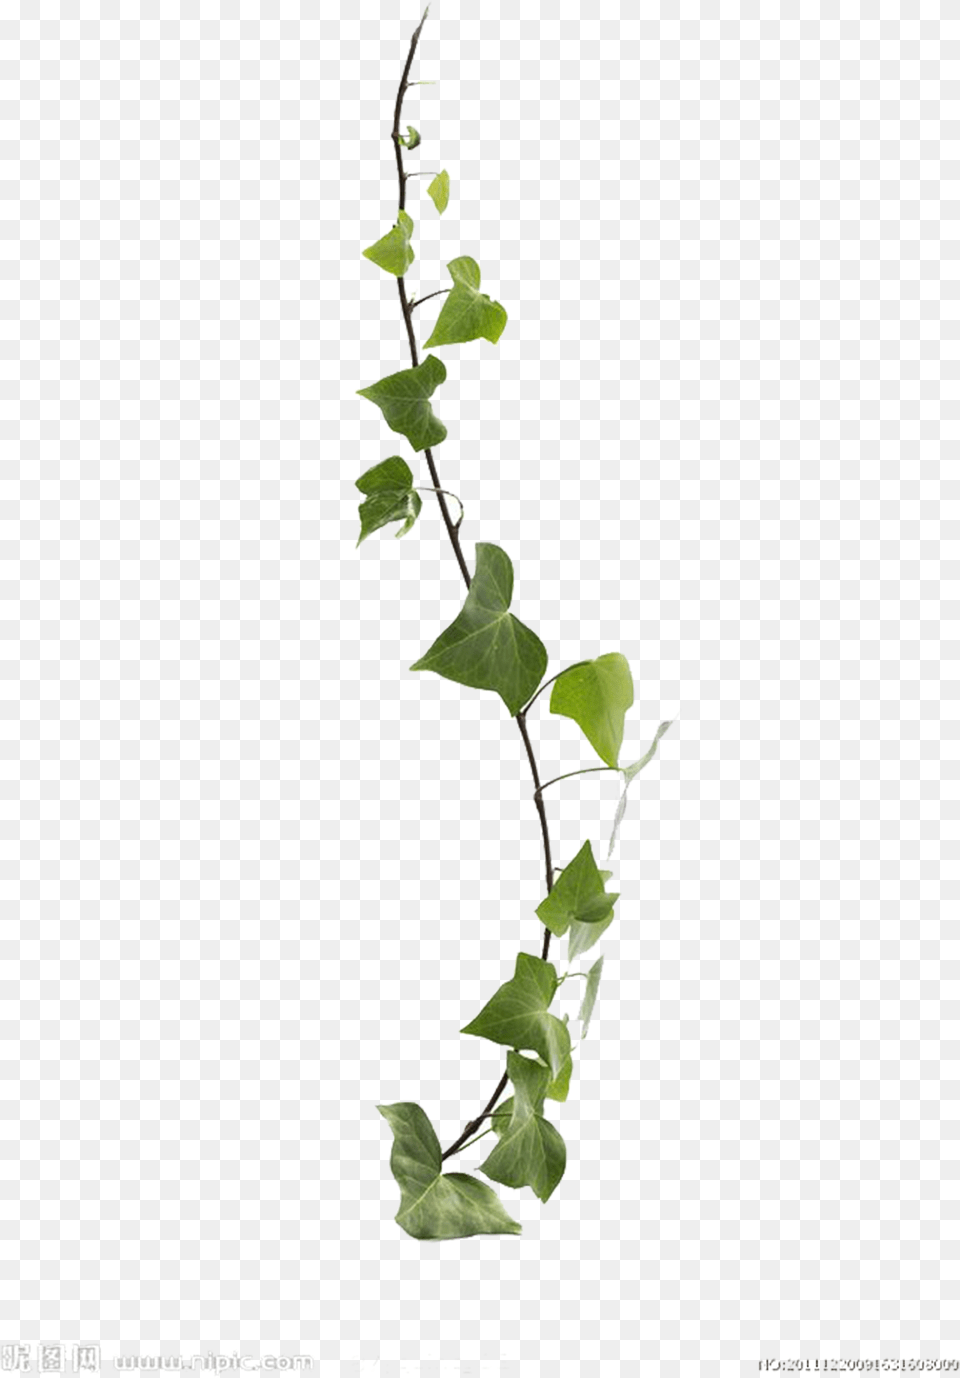 Transparent Plant Stem Transparent Background Vine, Ivy, Leaf Png Image